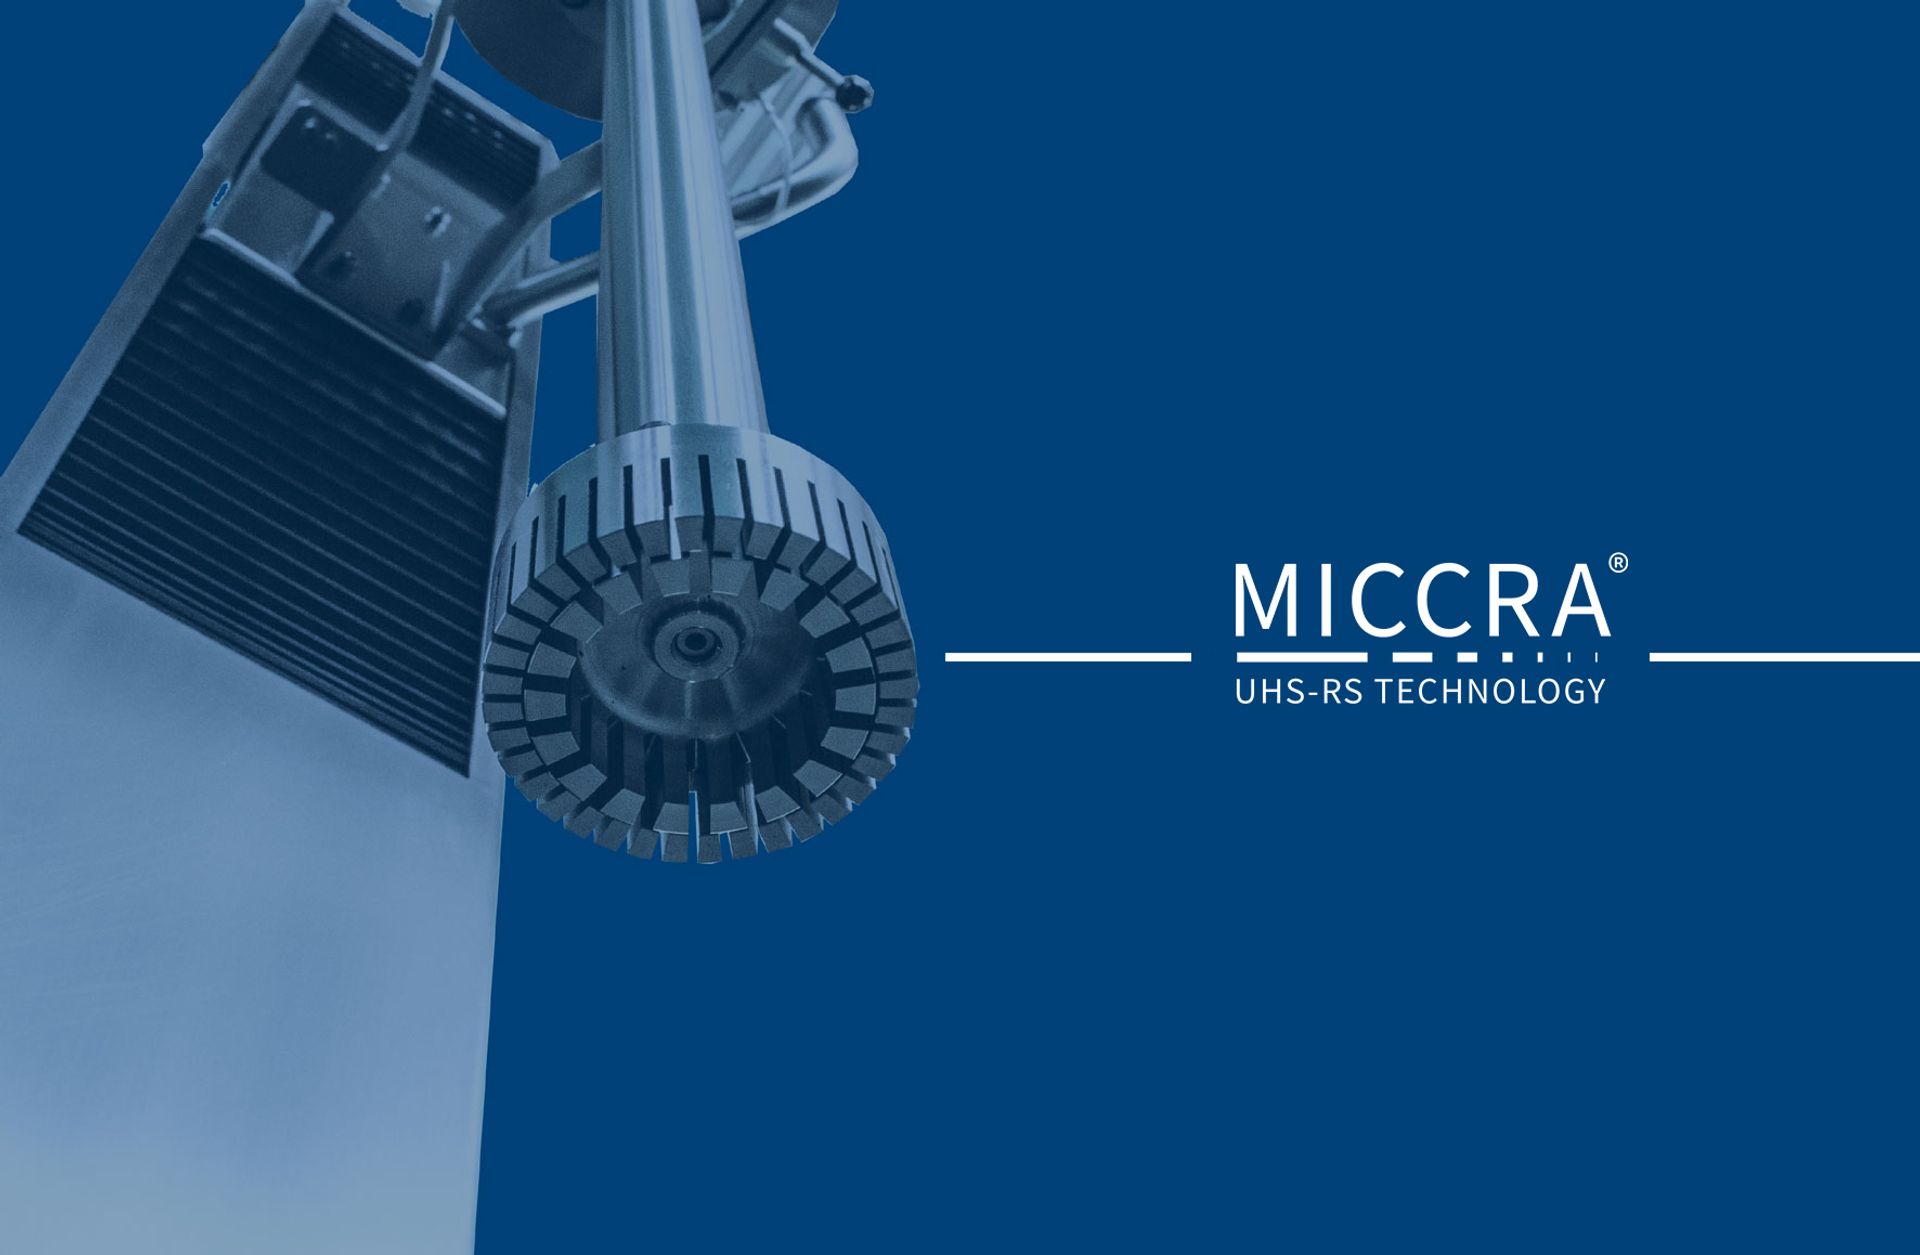 Miccra GmbH